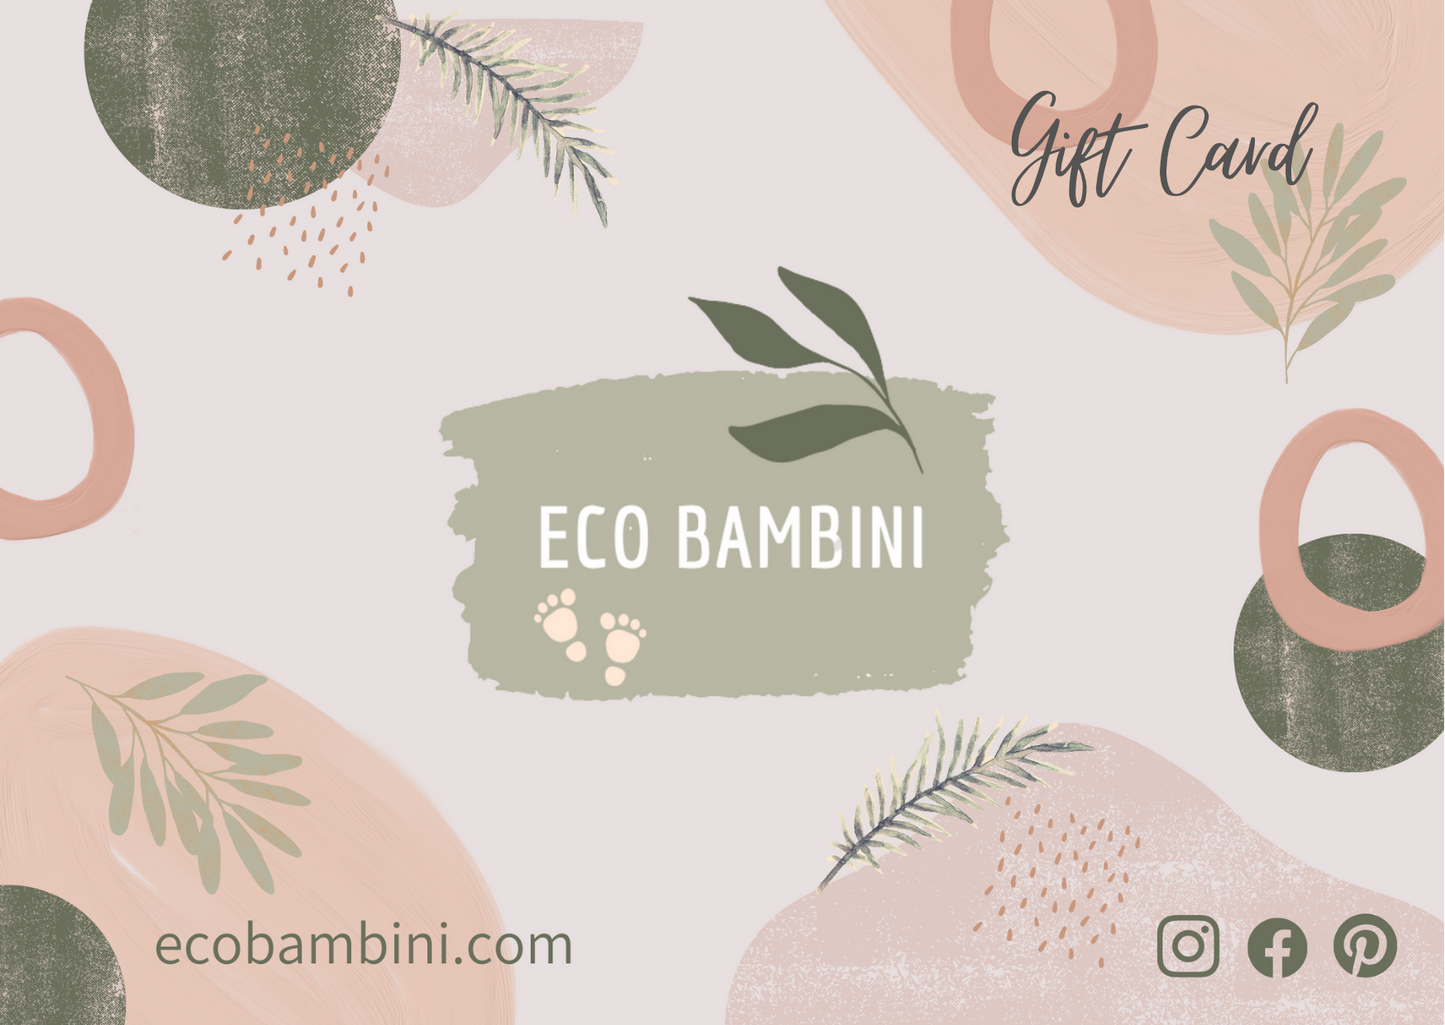 Eco Bambini gift card